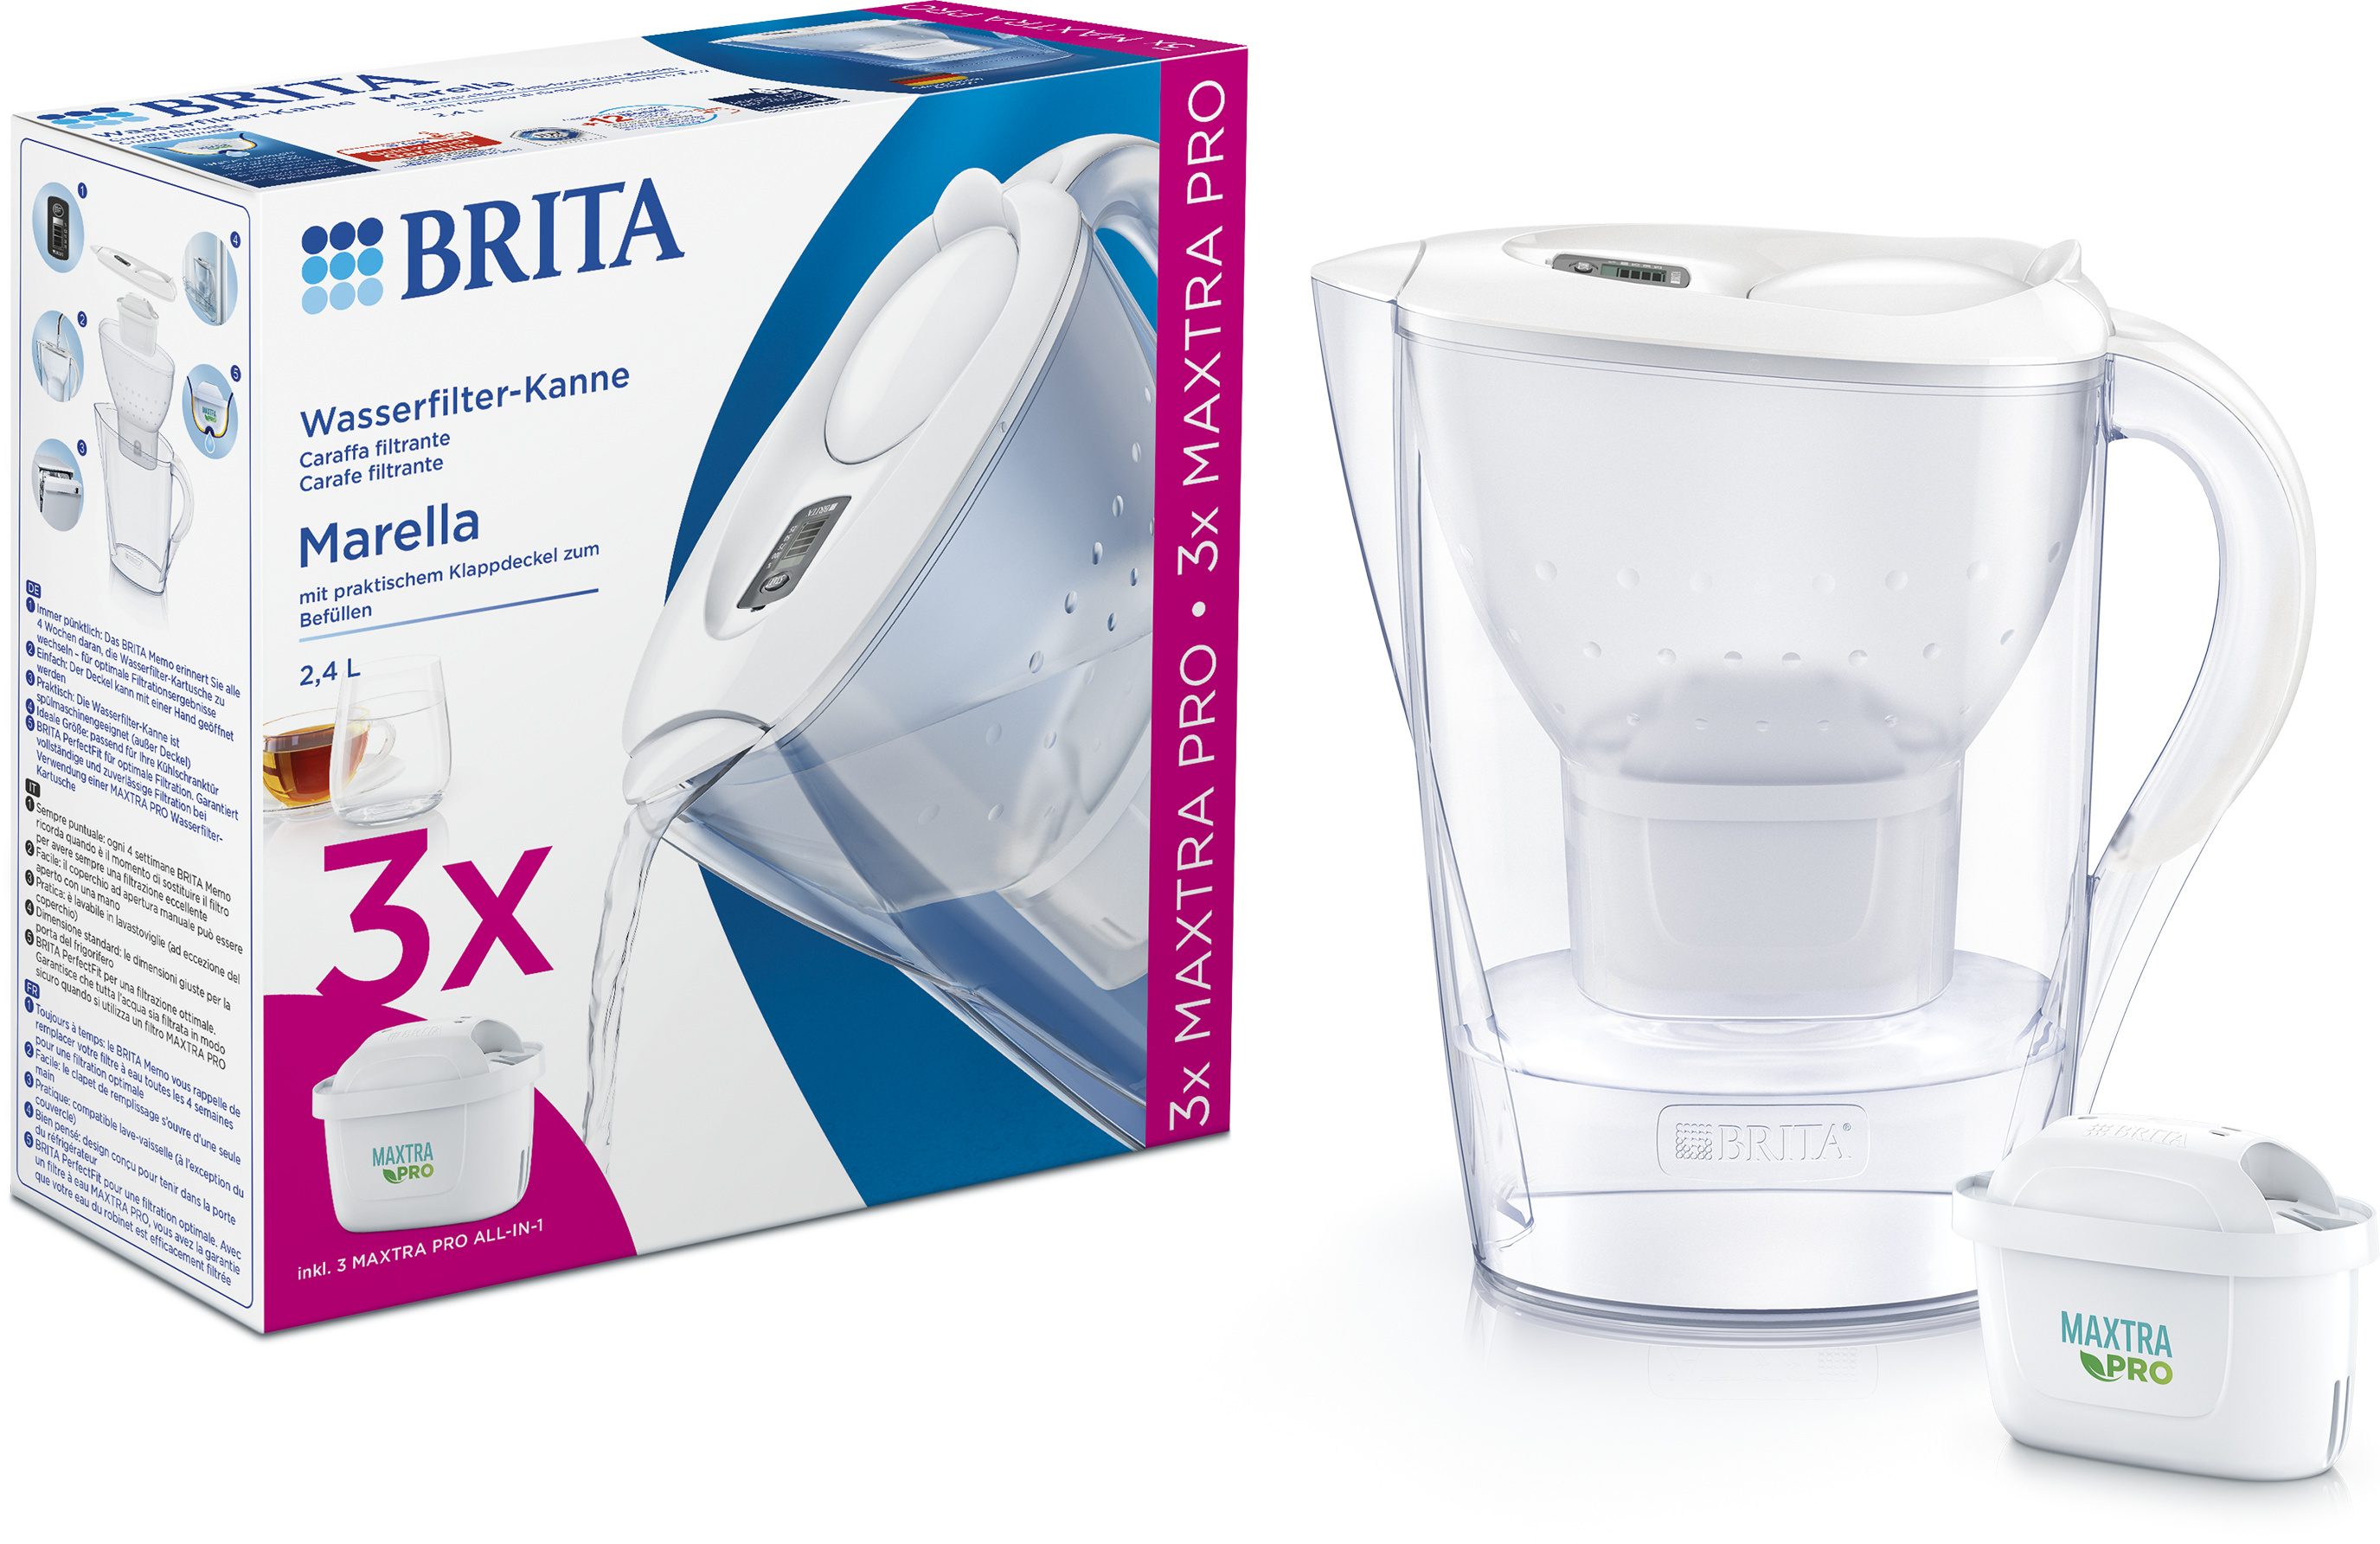 CARAFFA filtrante BRITA MARELLA 2.4L + 3 filtri Maxtra+ By mirkonethebest 